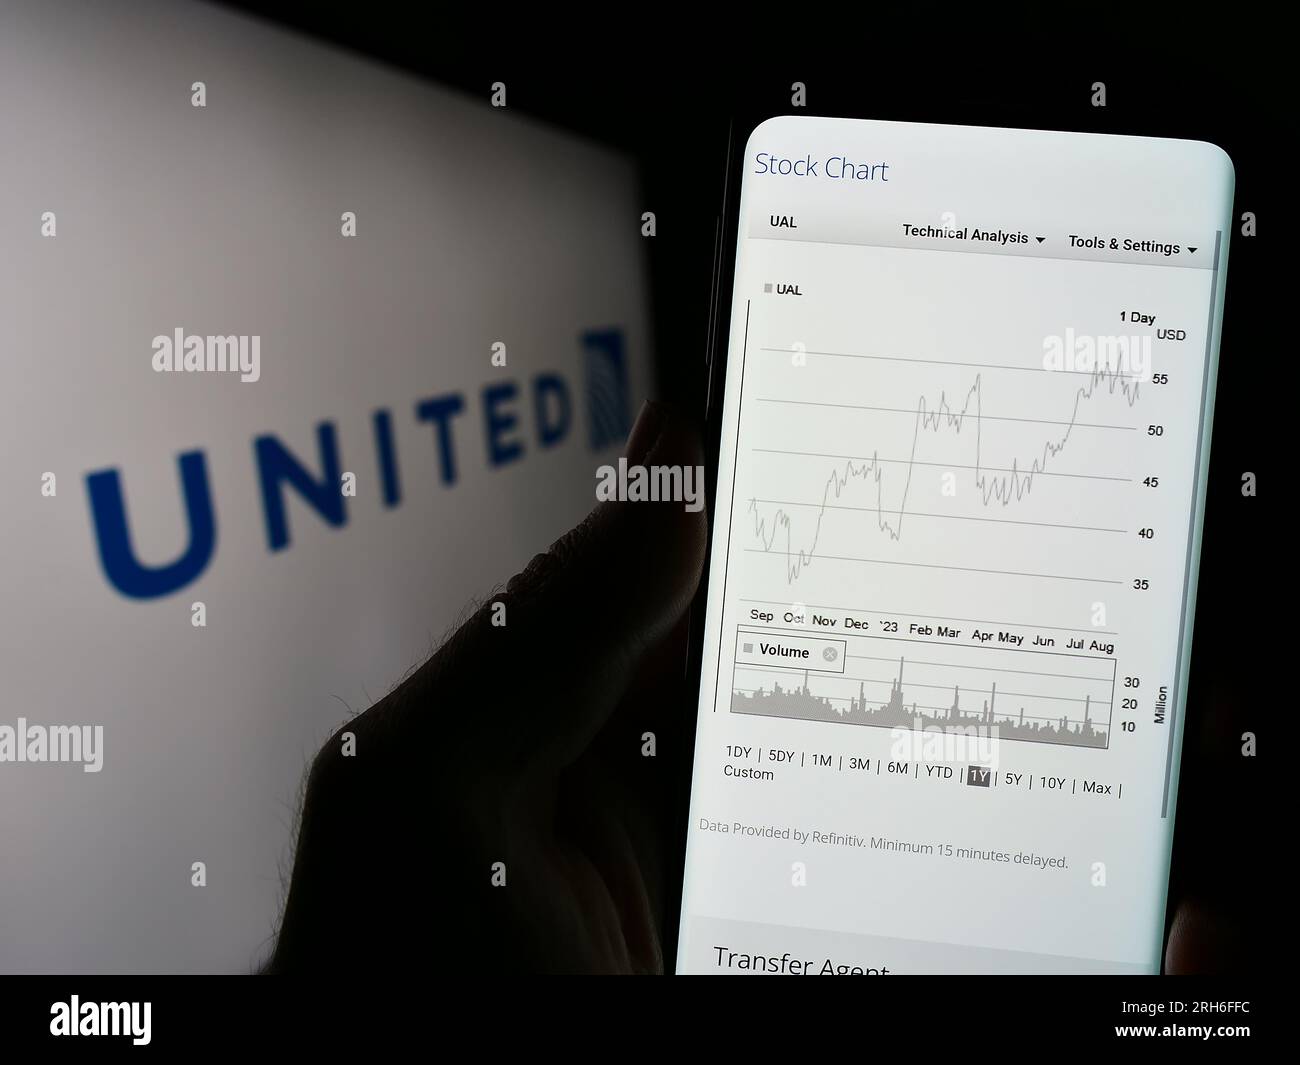 Personne tenant un téléphone cellulaire avec la page Web de la société américaine United Airlines Holdings Inc. Sur l'écran devant le logo. Concentrez-vous sur le centre de l'écran du téléphone. Banque D'Images